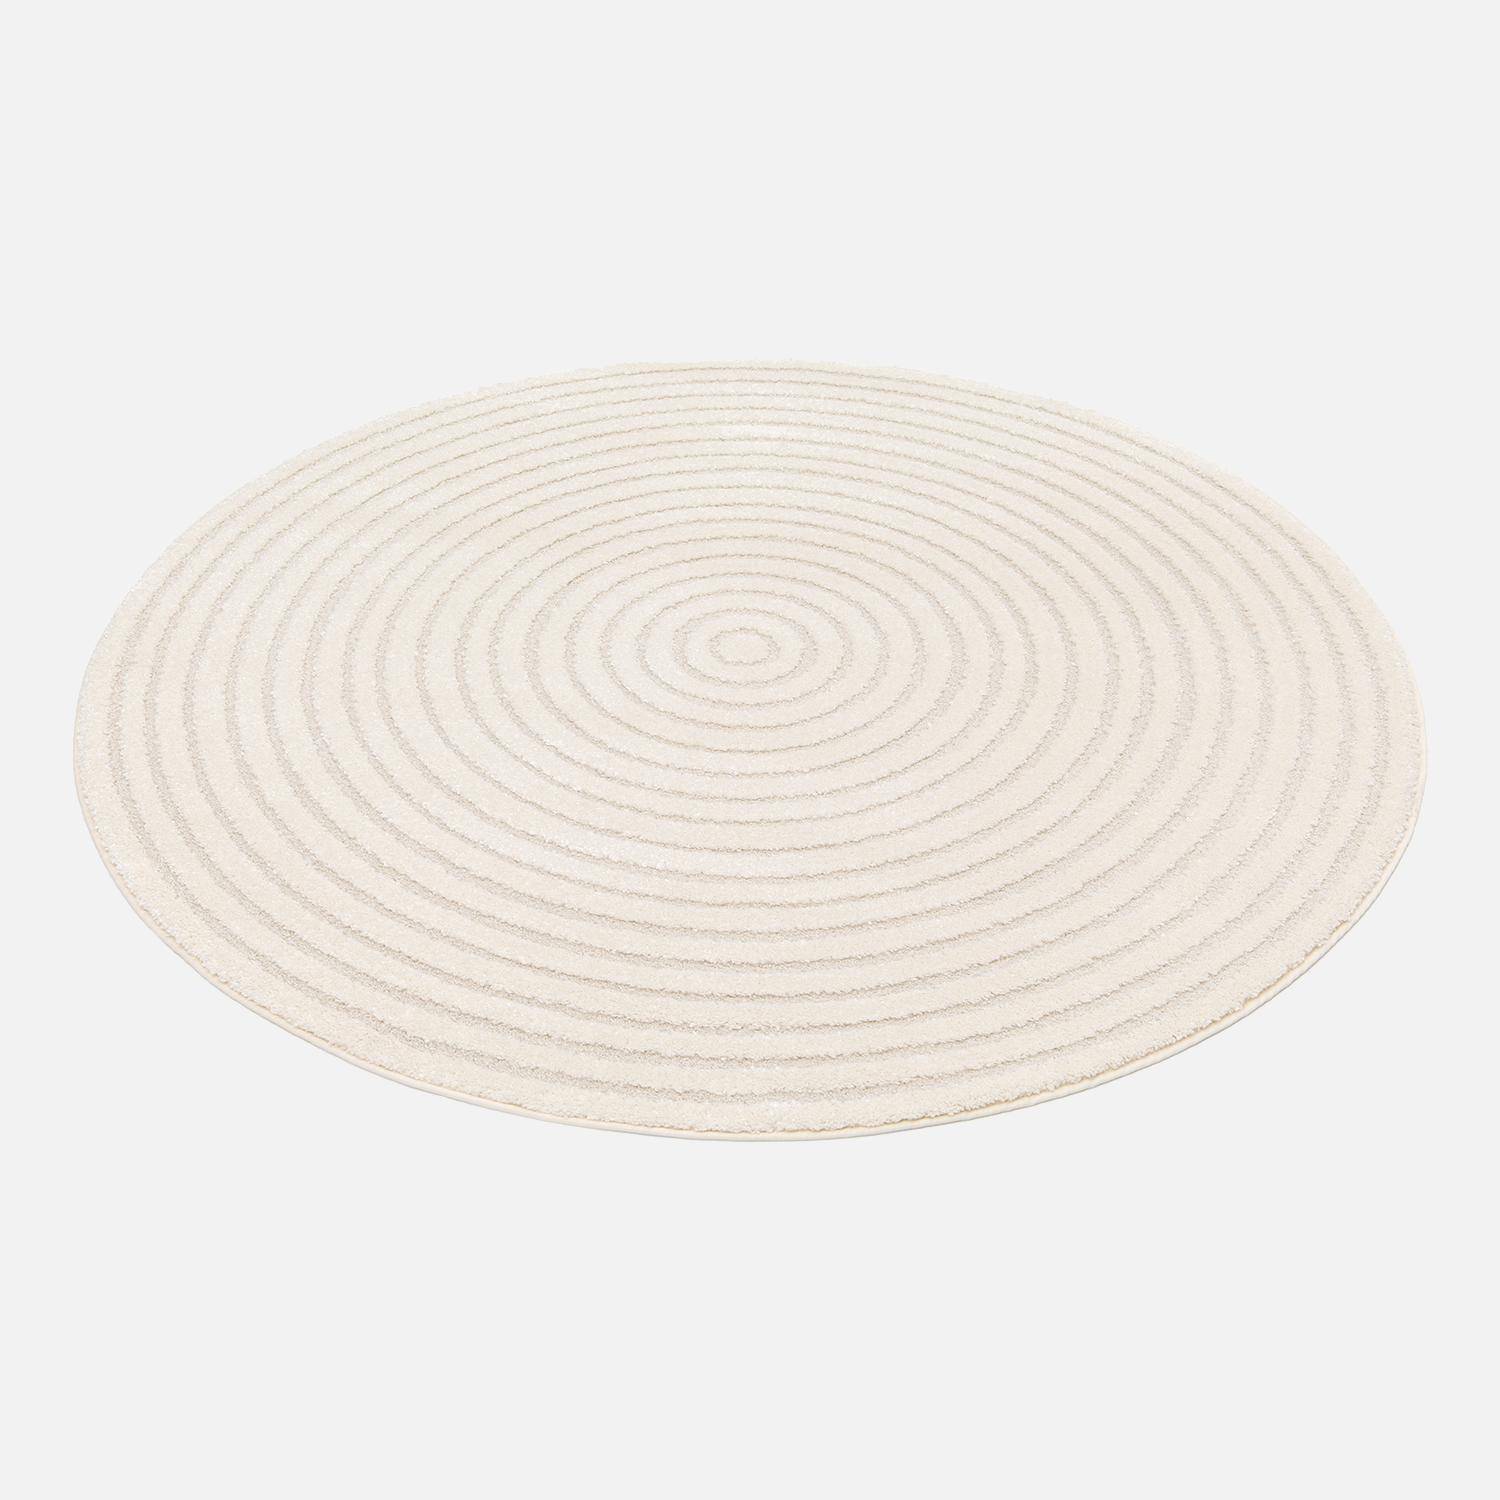 Interior carpet with raised circles in cream 160x160cm, Blair, Ø160 cm Photo3